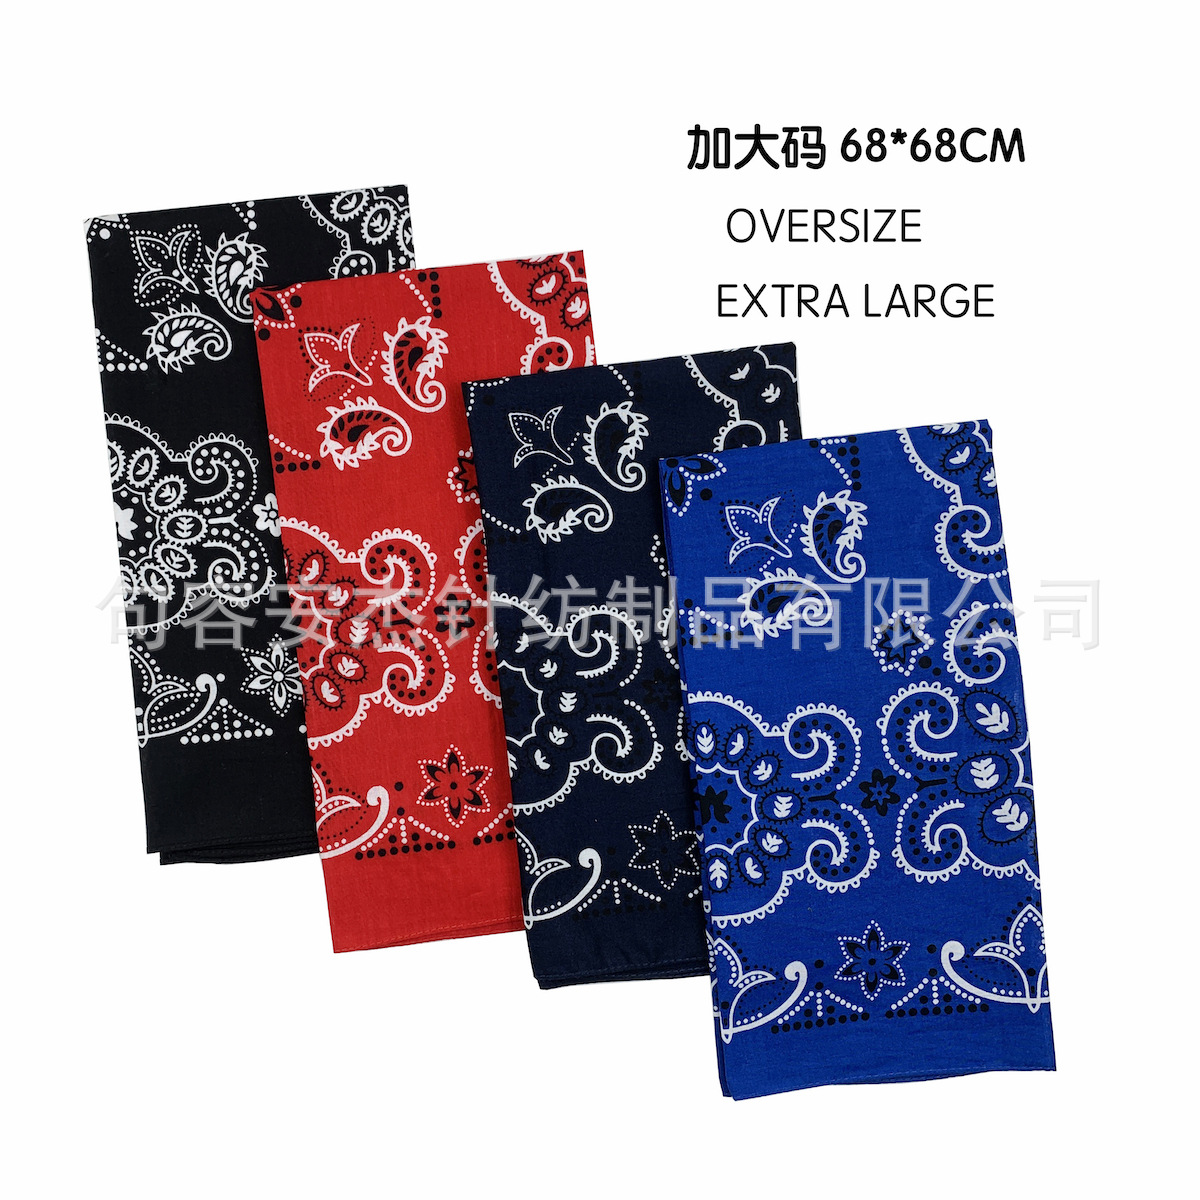 oversized bandana 68*68厘米大方巾街舞嘻哈头巾 腰果印花棉方巾